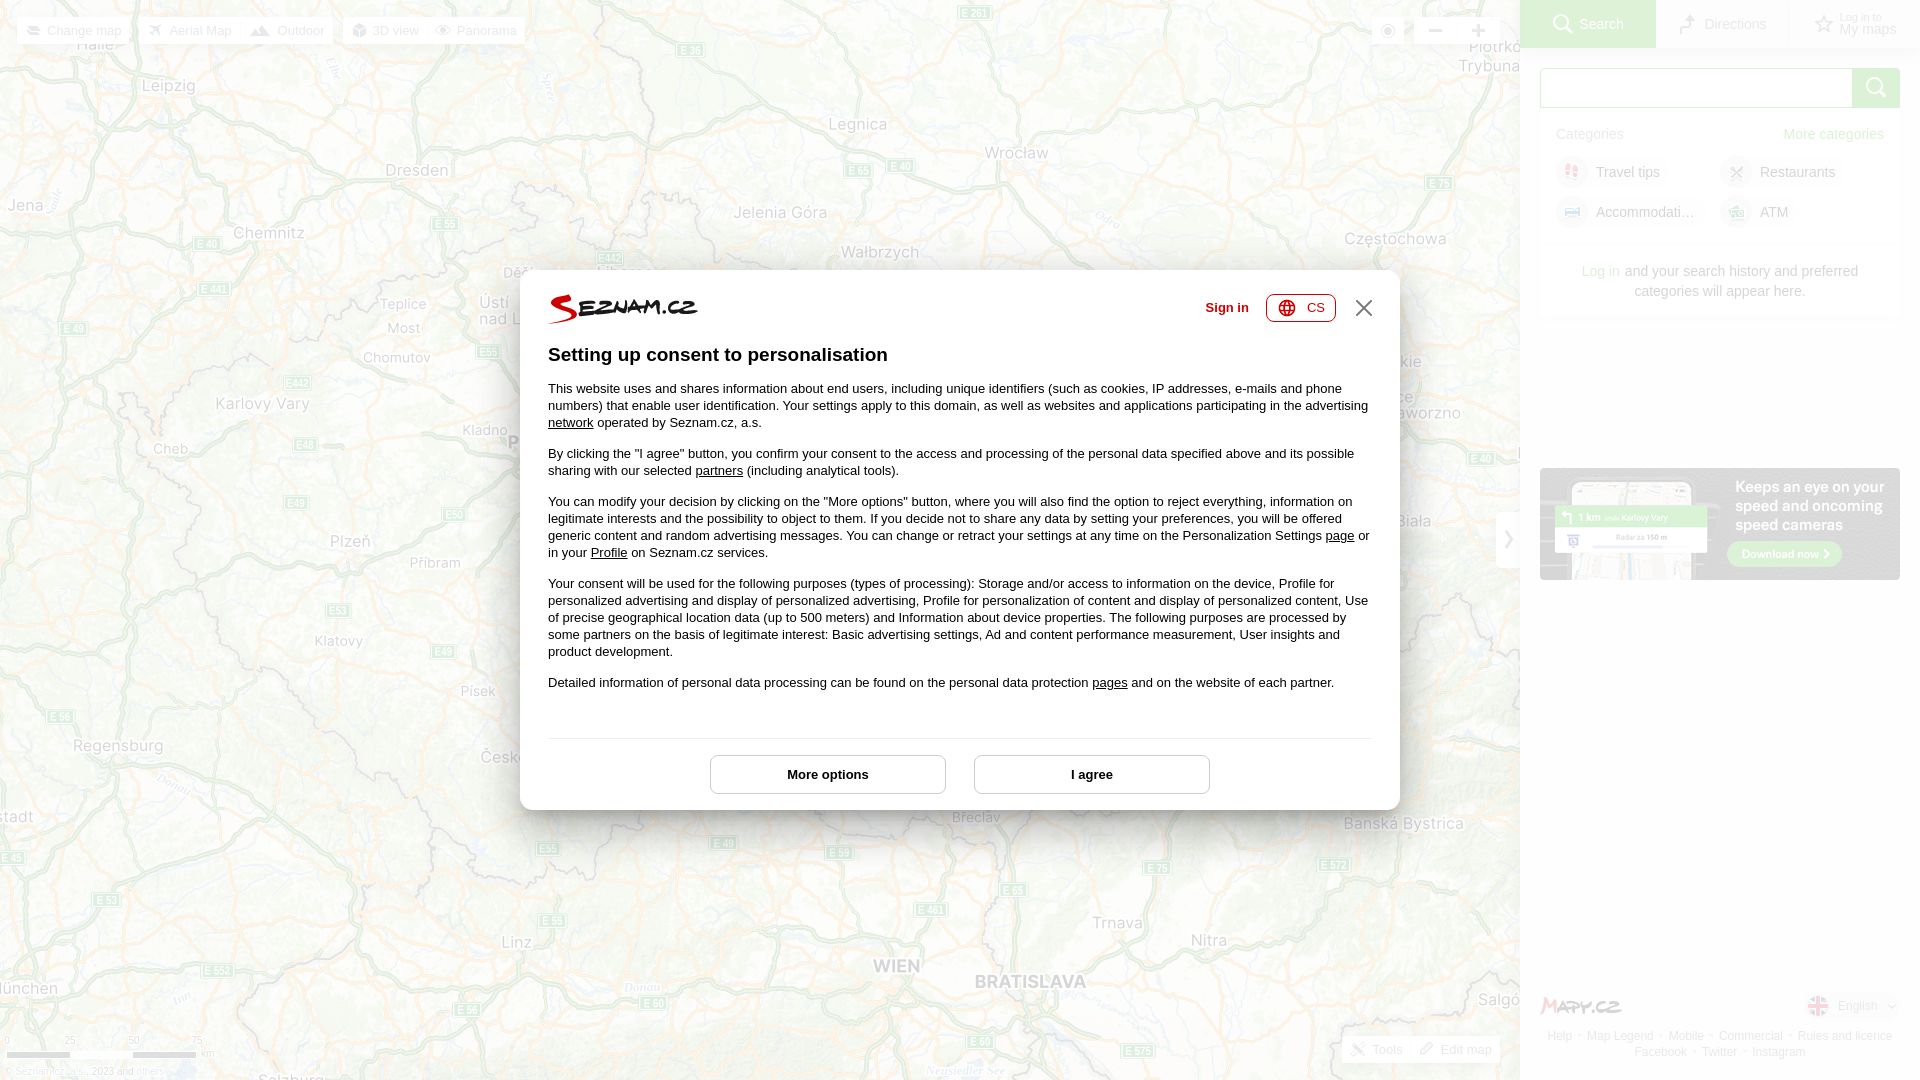 Webseitenstatus mapy.cz ist   ONLINE